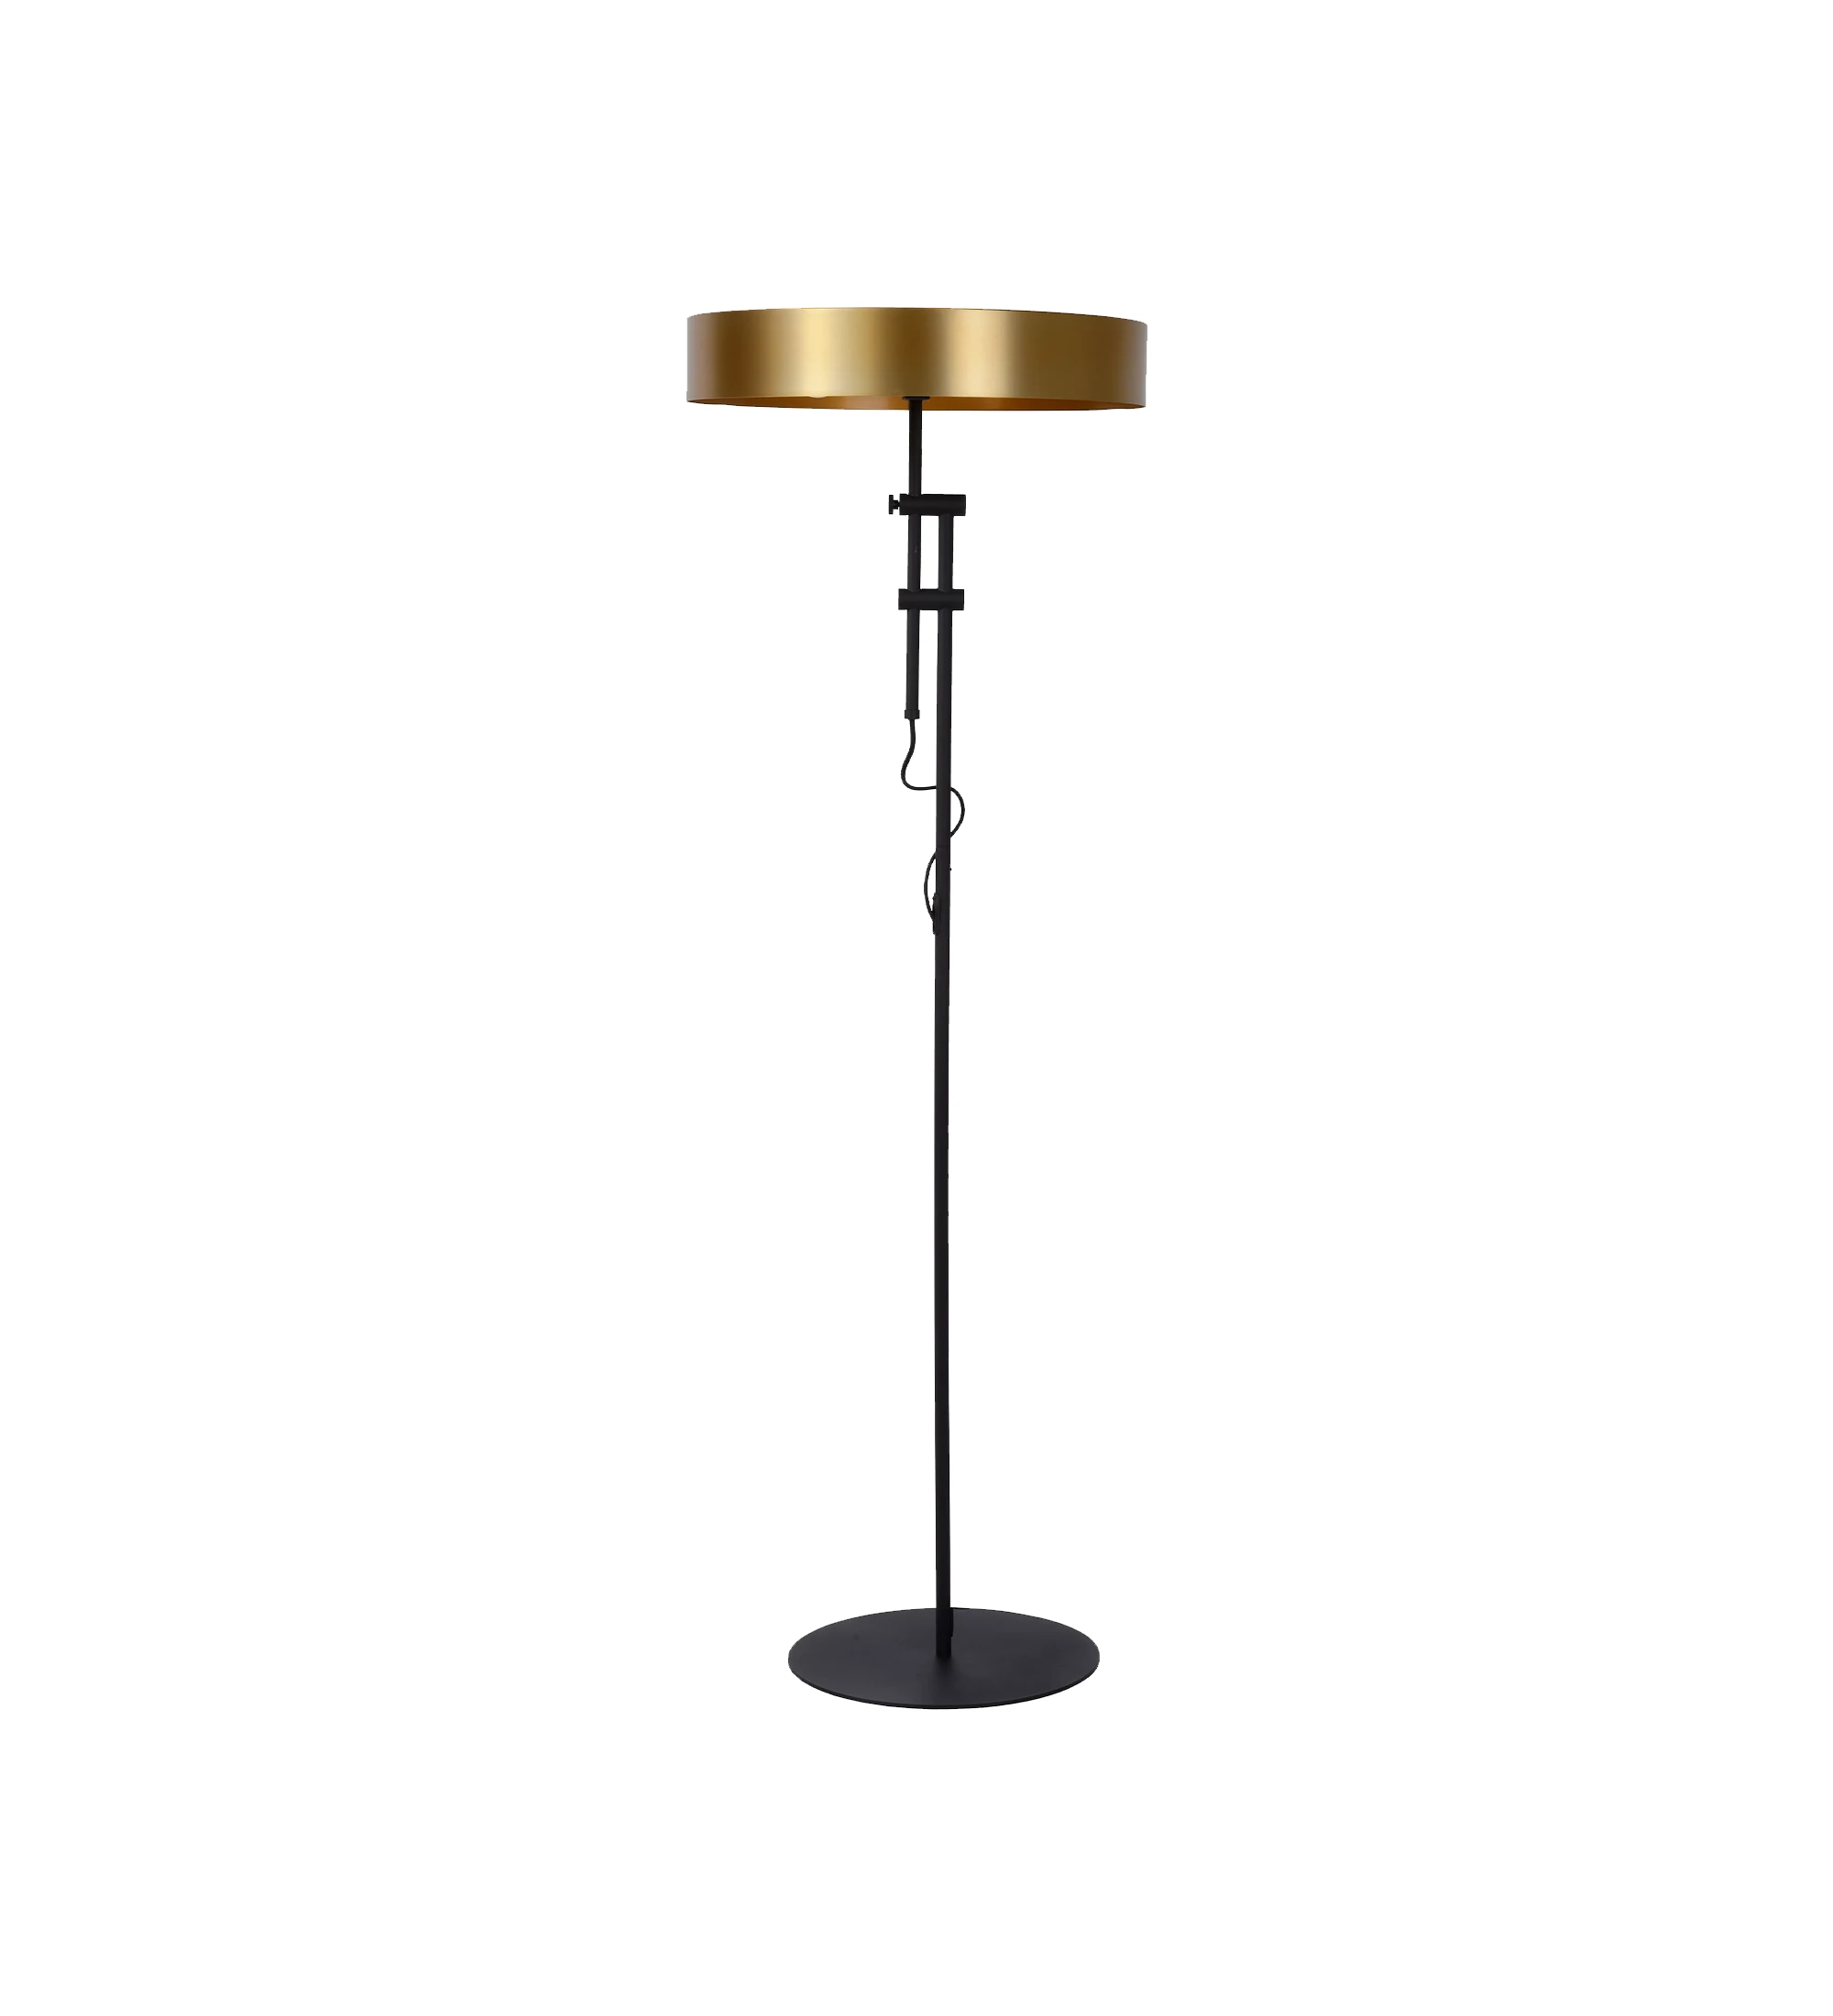  Lámpara de pie con base de mármol negro y estructura de metal dorado satinado.